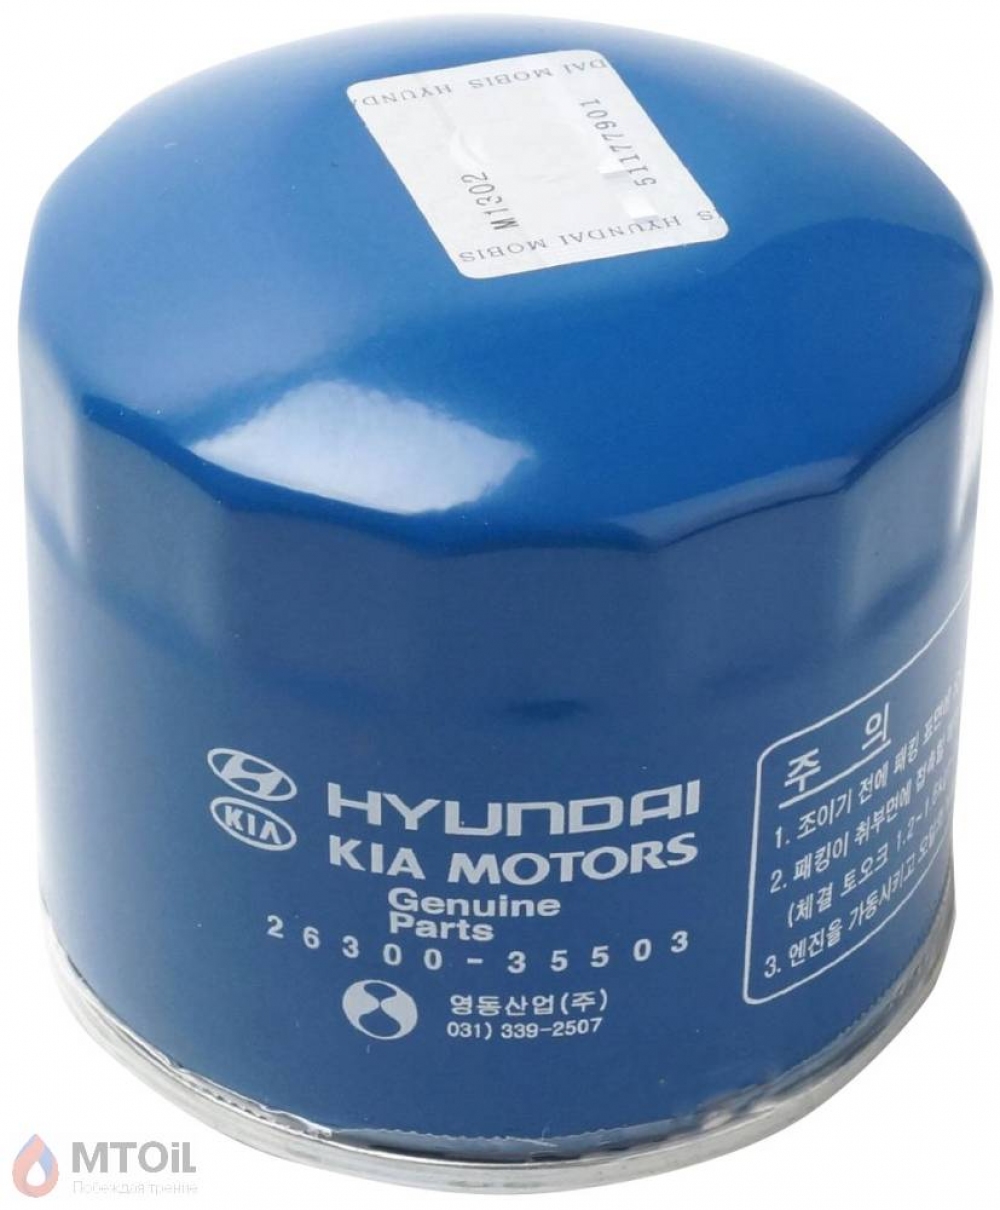 Фильтр масляный оригинальный  Hyundai/KIA  26300-35505 - 17369